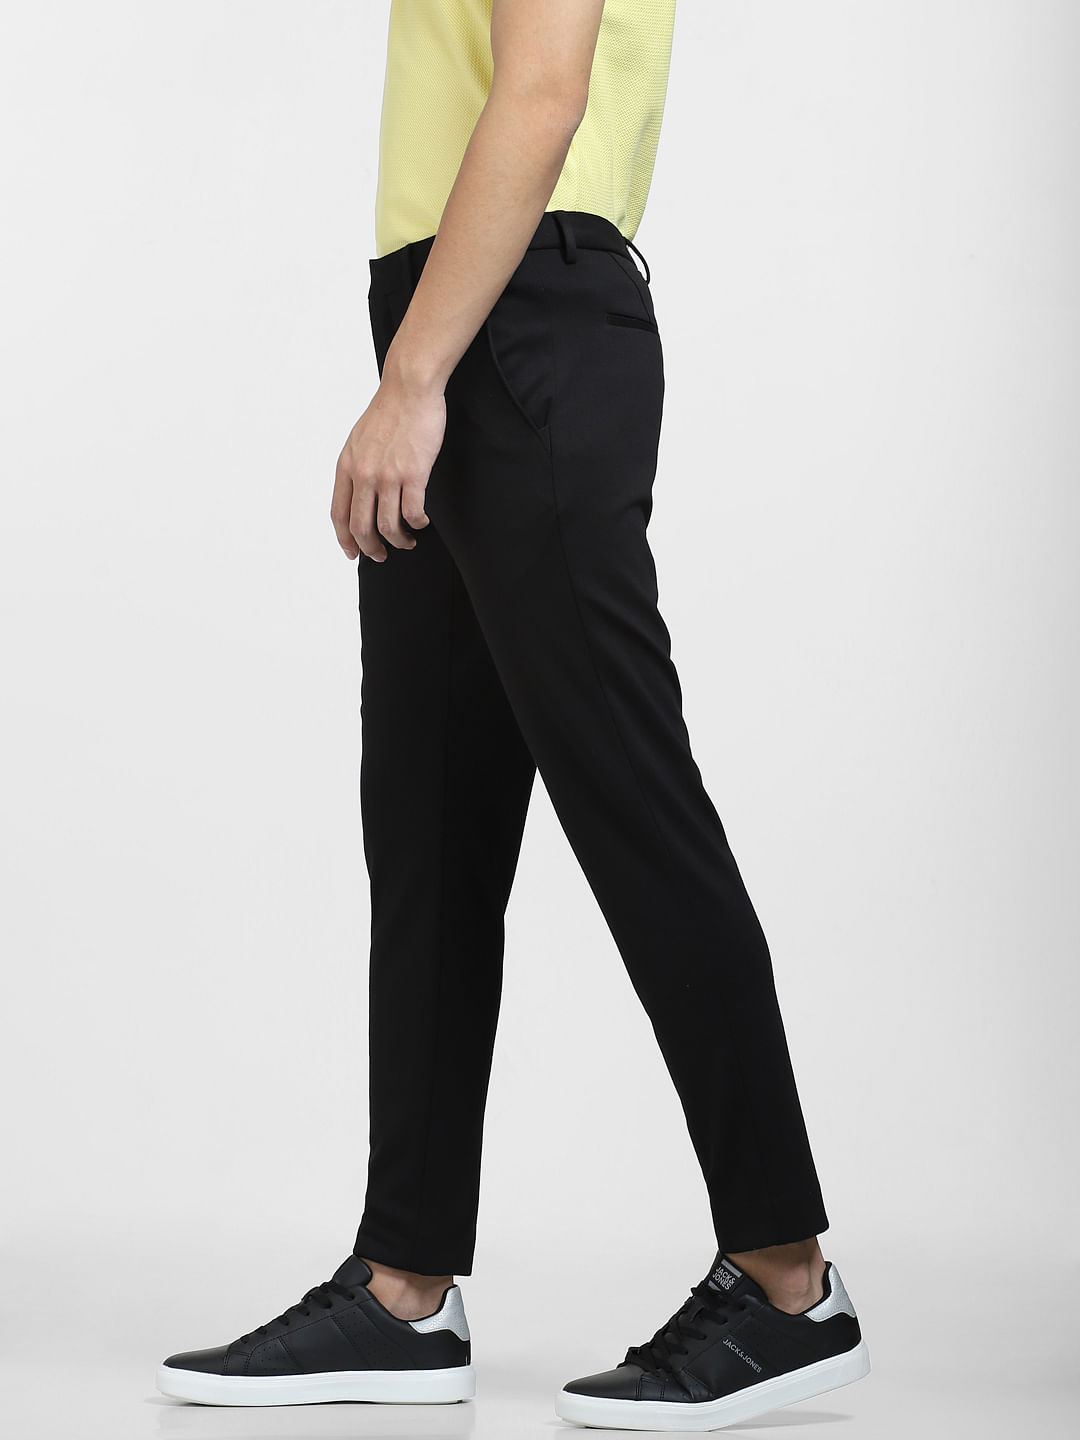 Women's Check Slim Pants High Rise | Ally Fashion